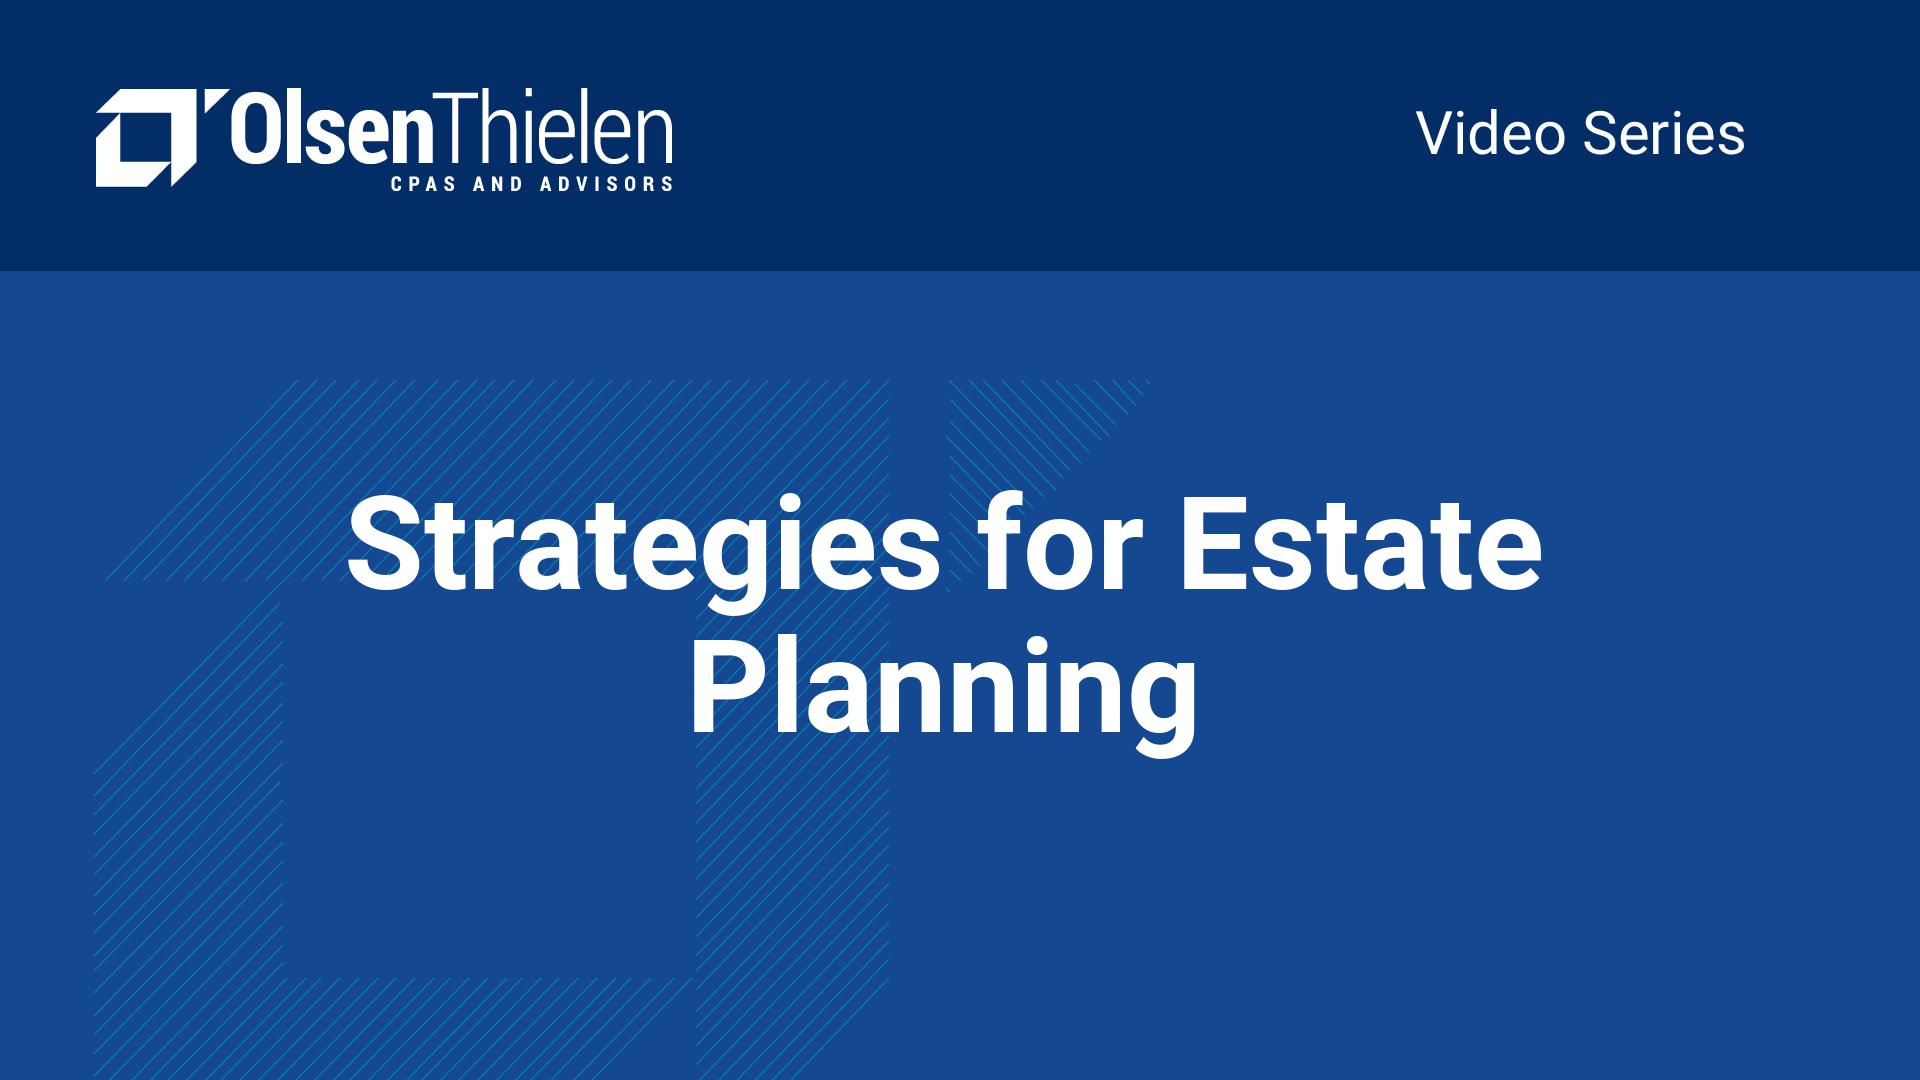 strategies-for-estate-planning-olsen-thielen-cpas-advisors